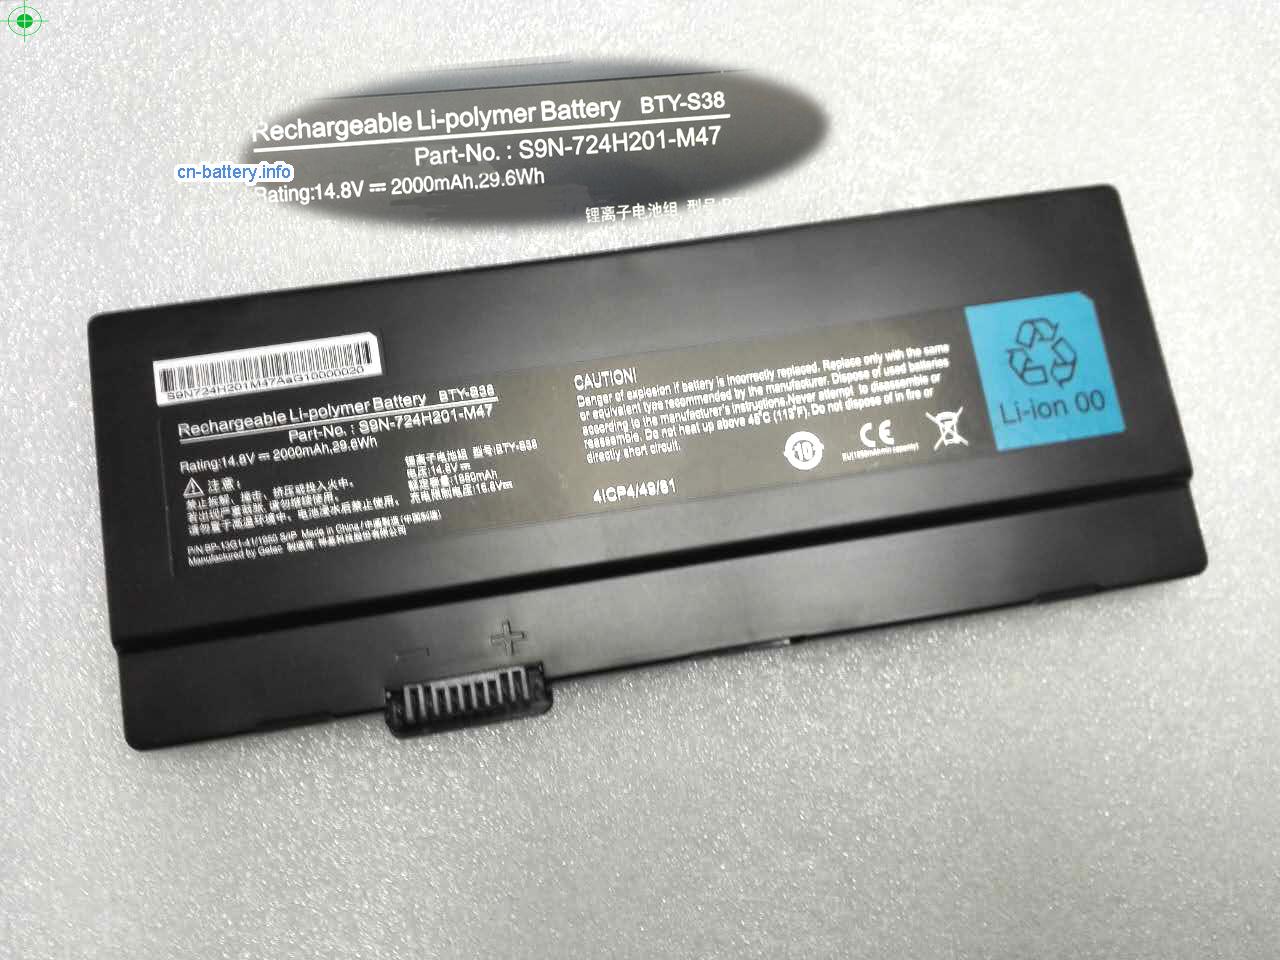 14.8V MSI S9N-724H201-M47 电池 2000mAh, 29.6Wh 